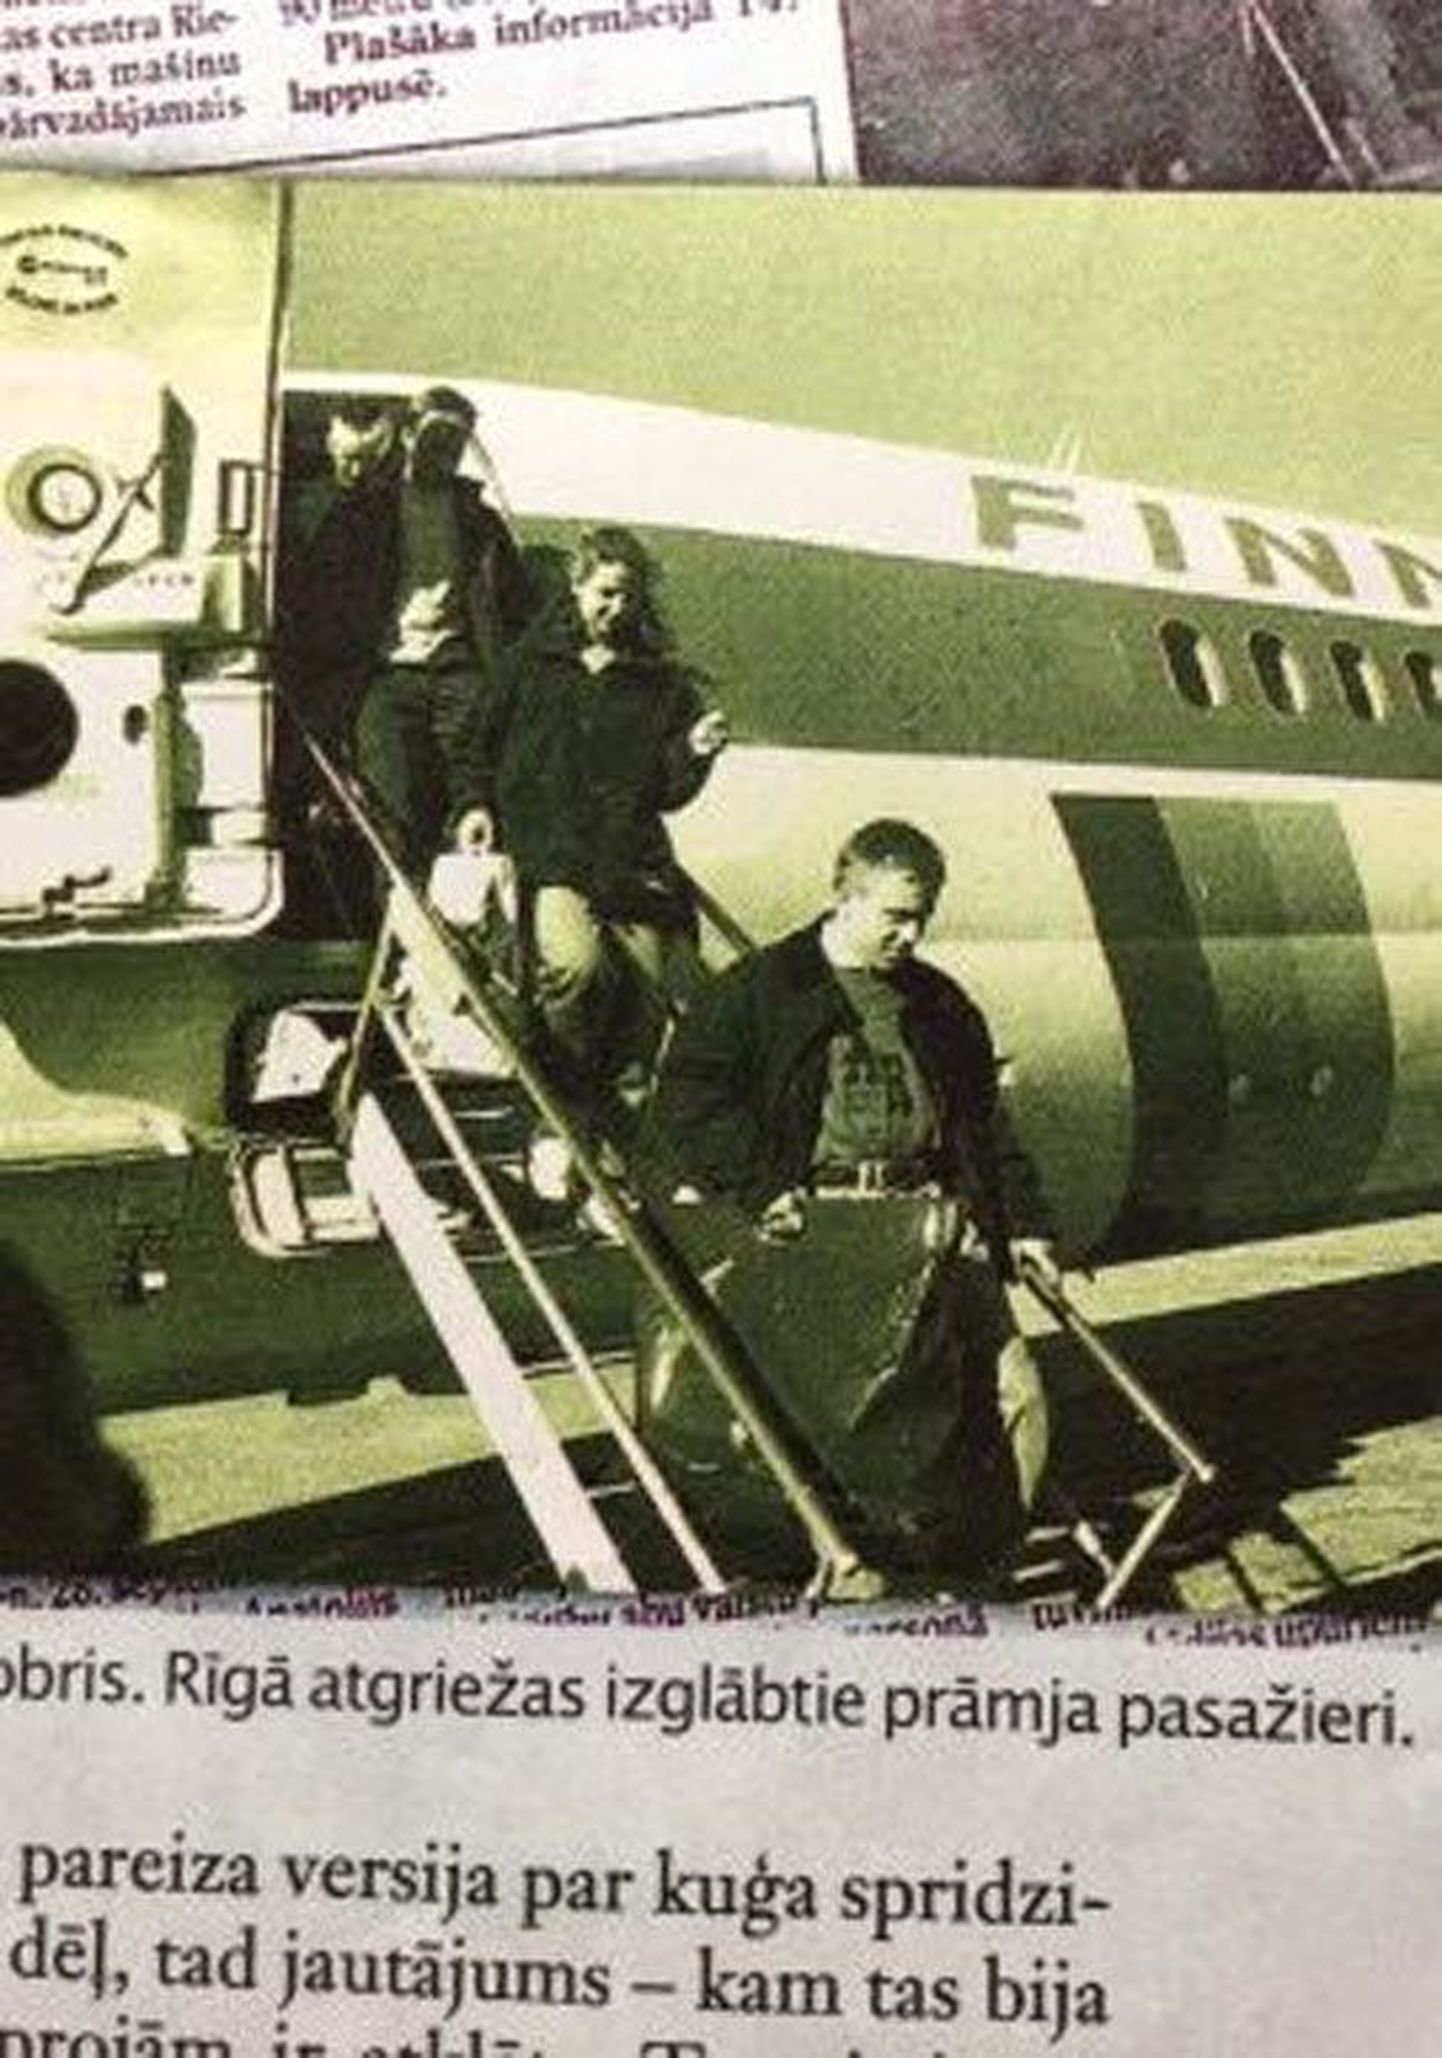 Läti ajalehes ilumunud uudis Estonialt pääsenute kojutulekust.